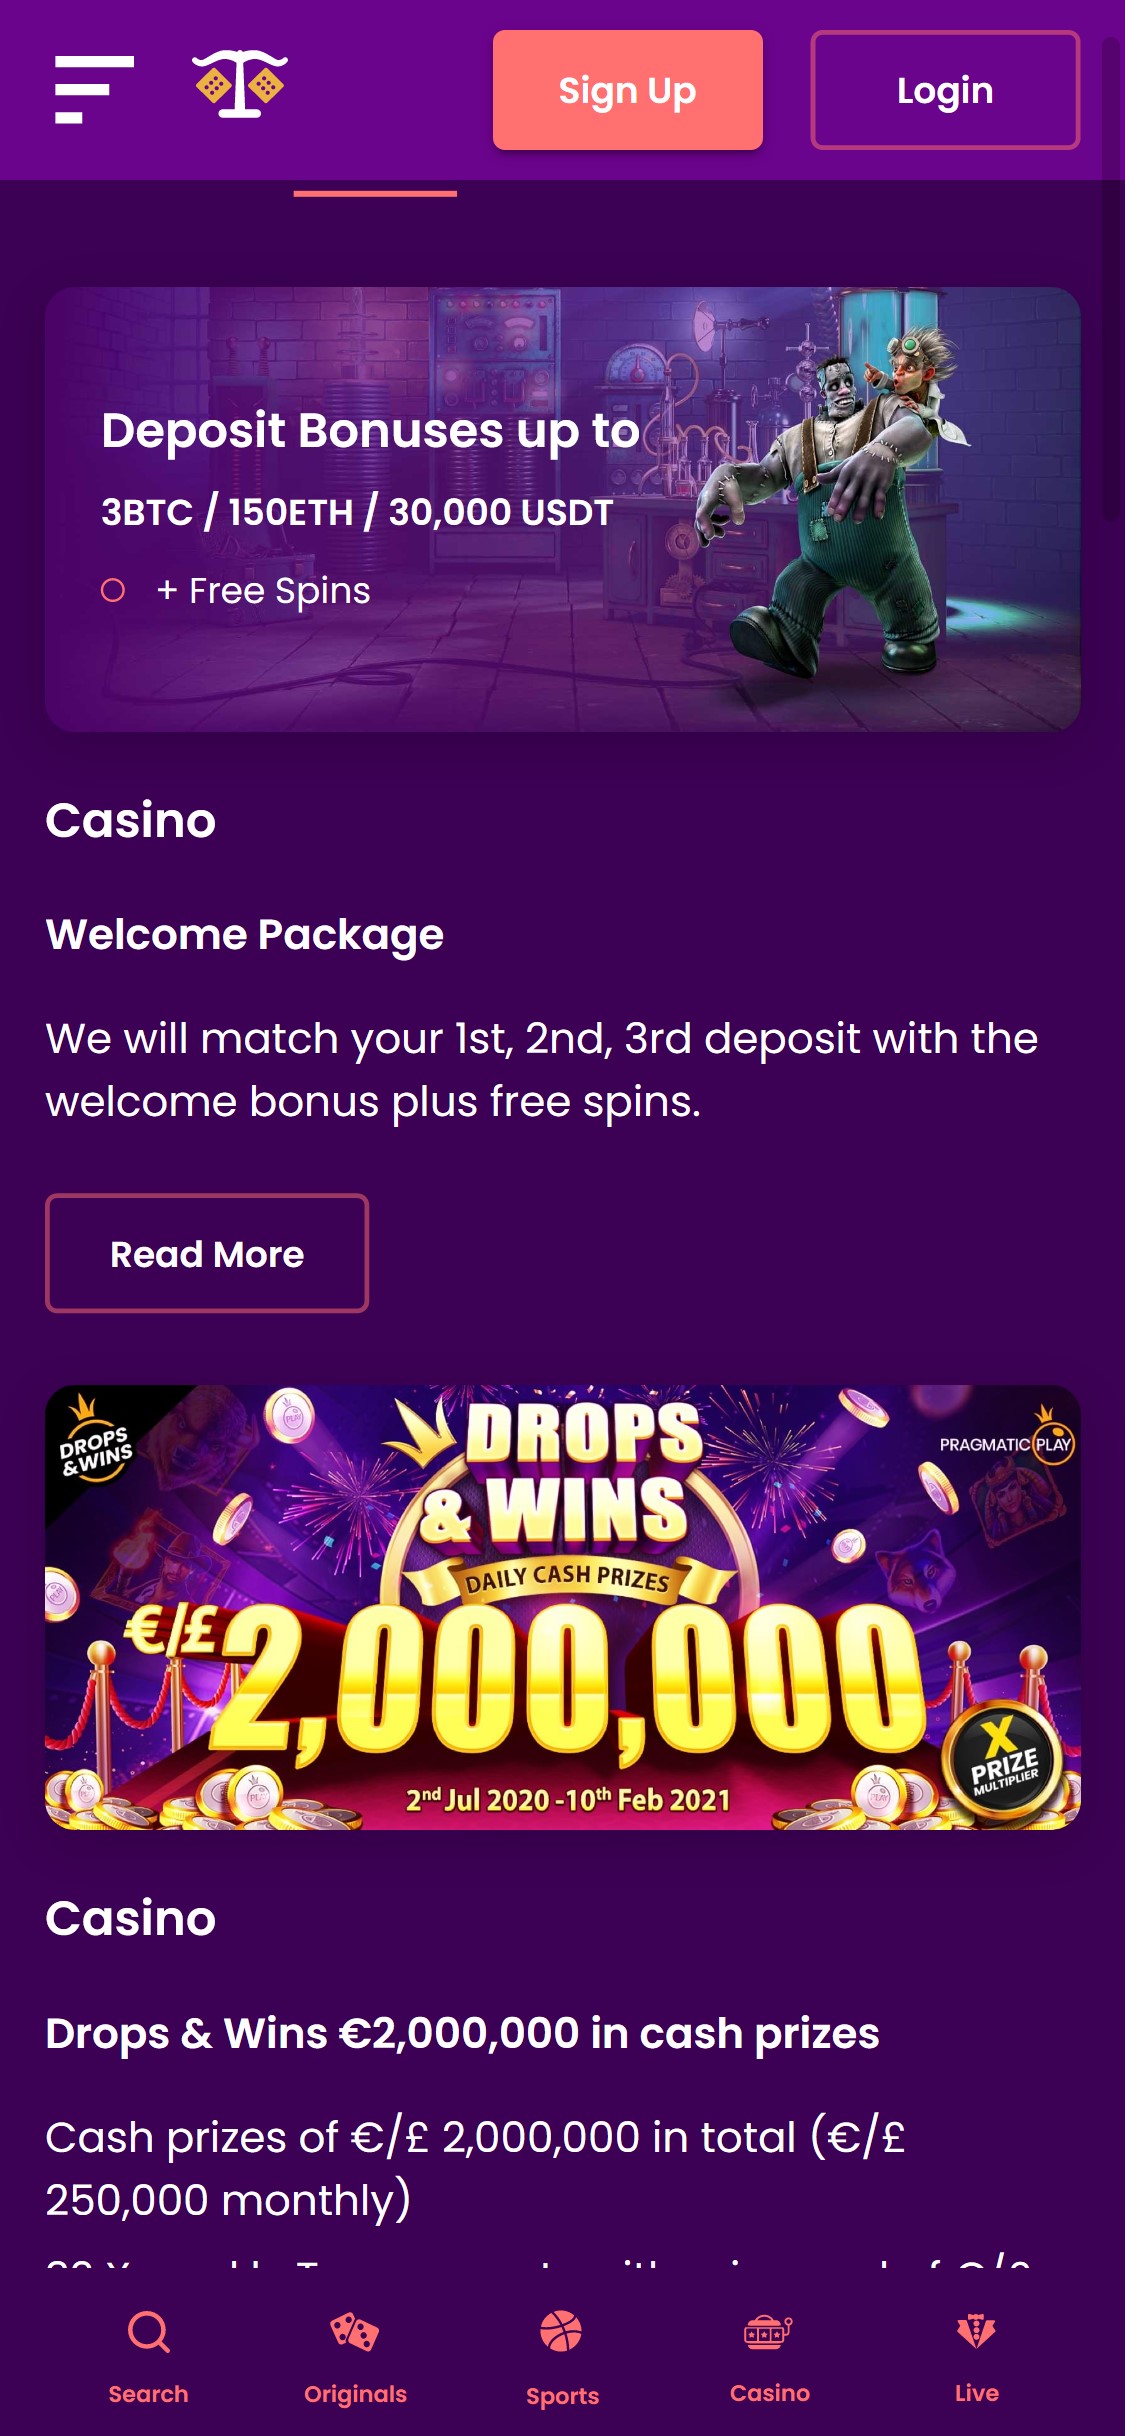 TrustDice Casino Mobile No Deposit Bonus Review